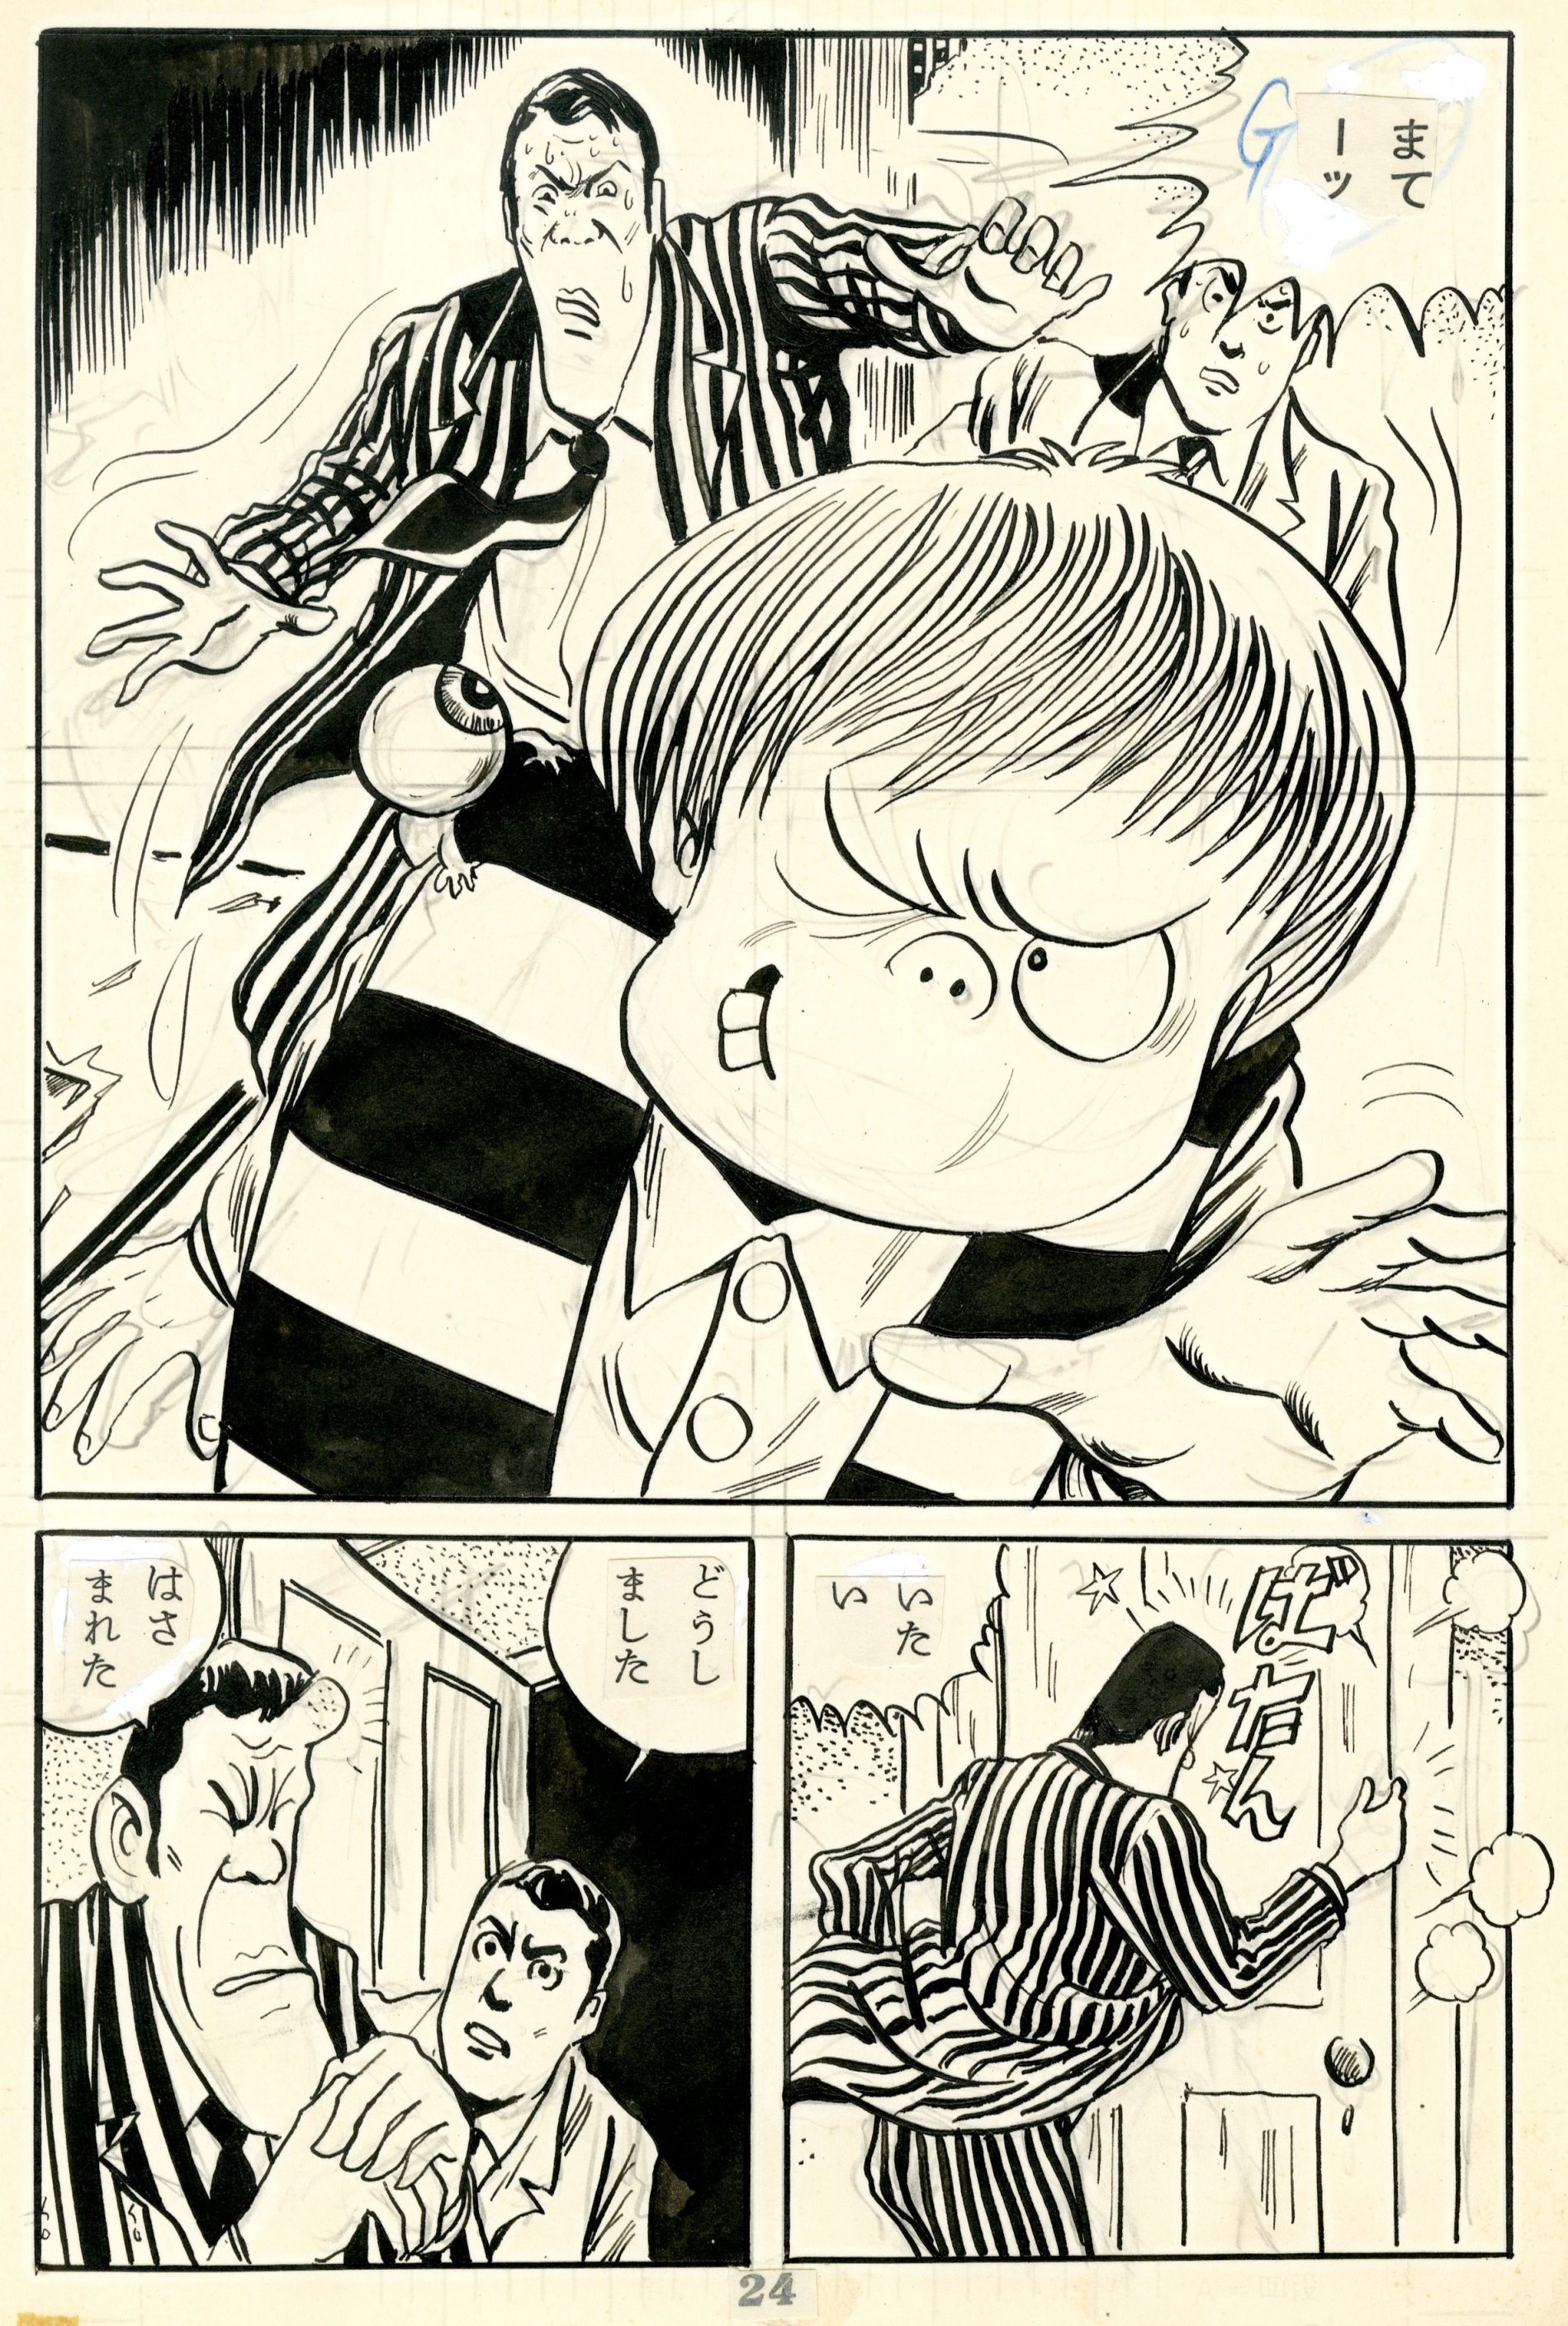 墓場鬼太郎「怪奇一番勝負」 1962年　(C)水木プロダクション